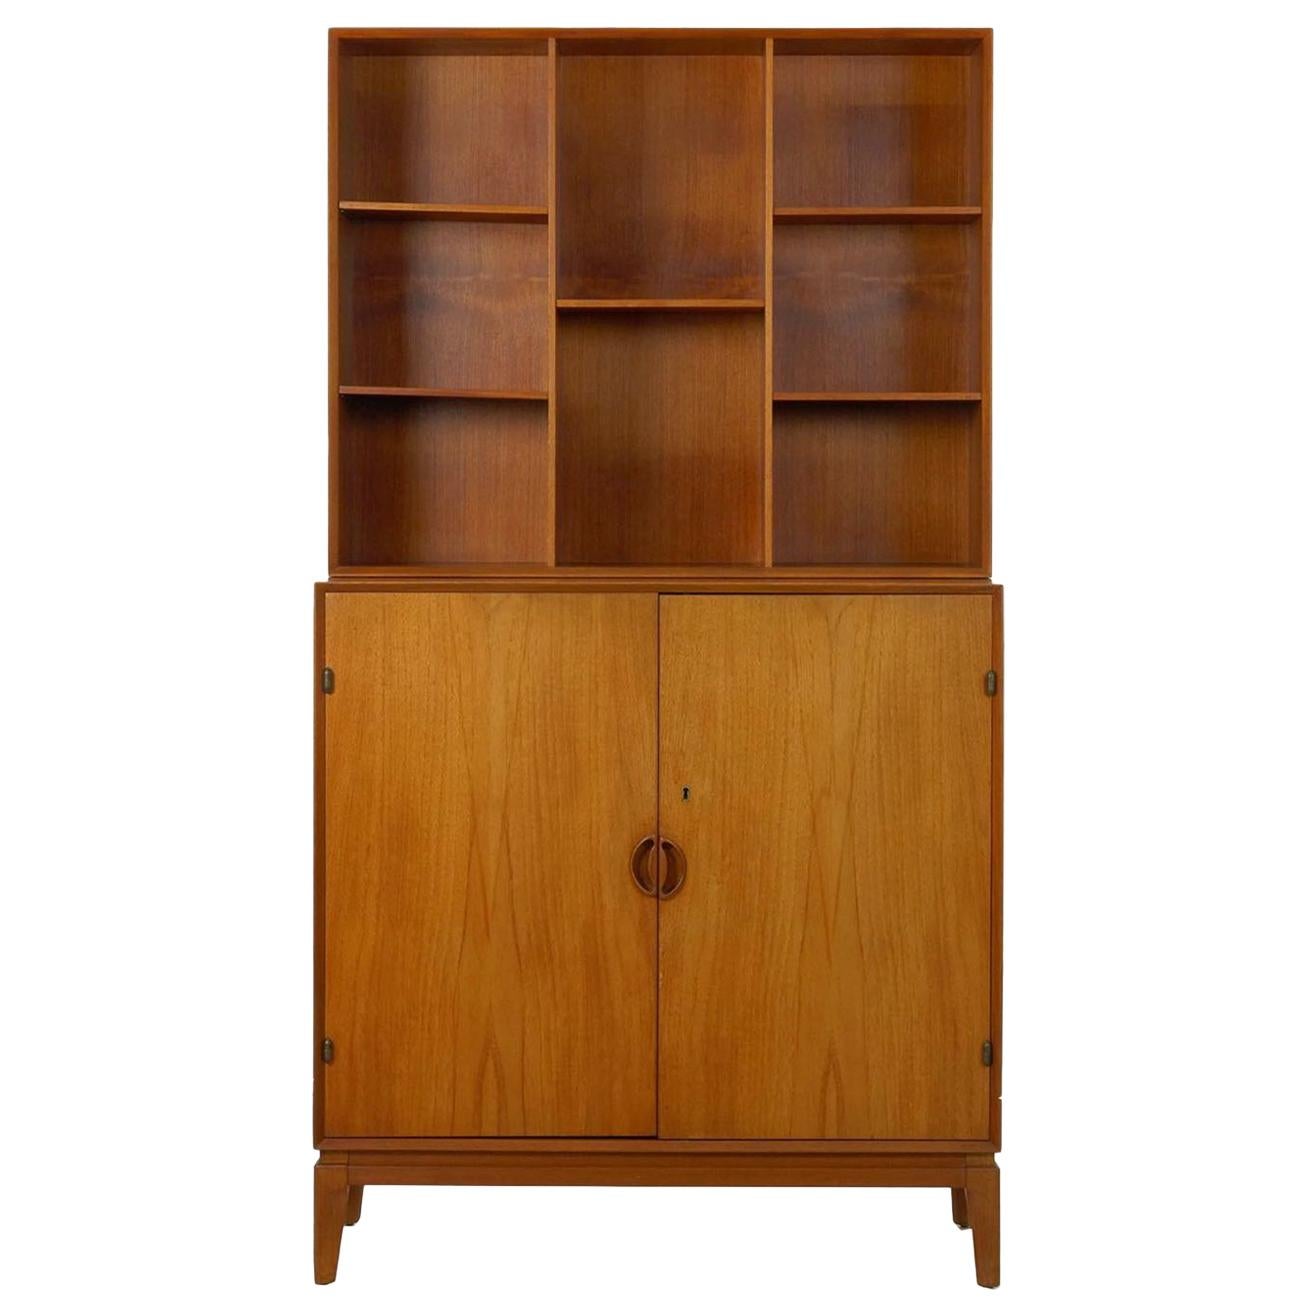 Peter Hvidt & Orla Mørlgaard for John Stuart Mid-Century Modern Bookcase Cabinet